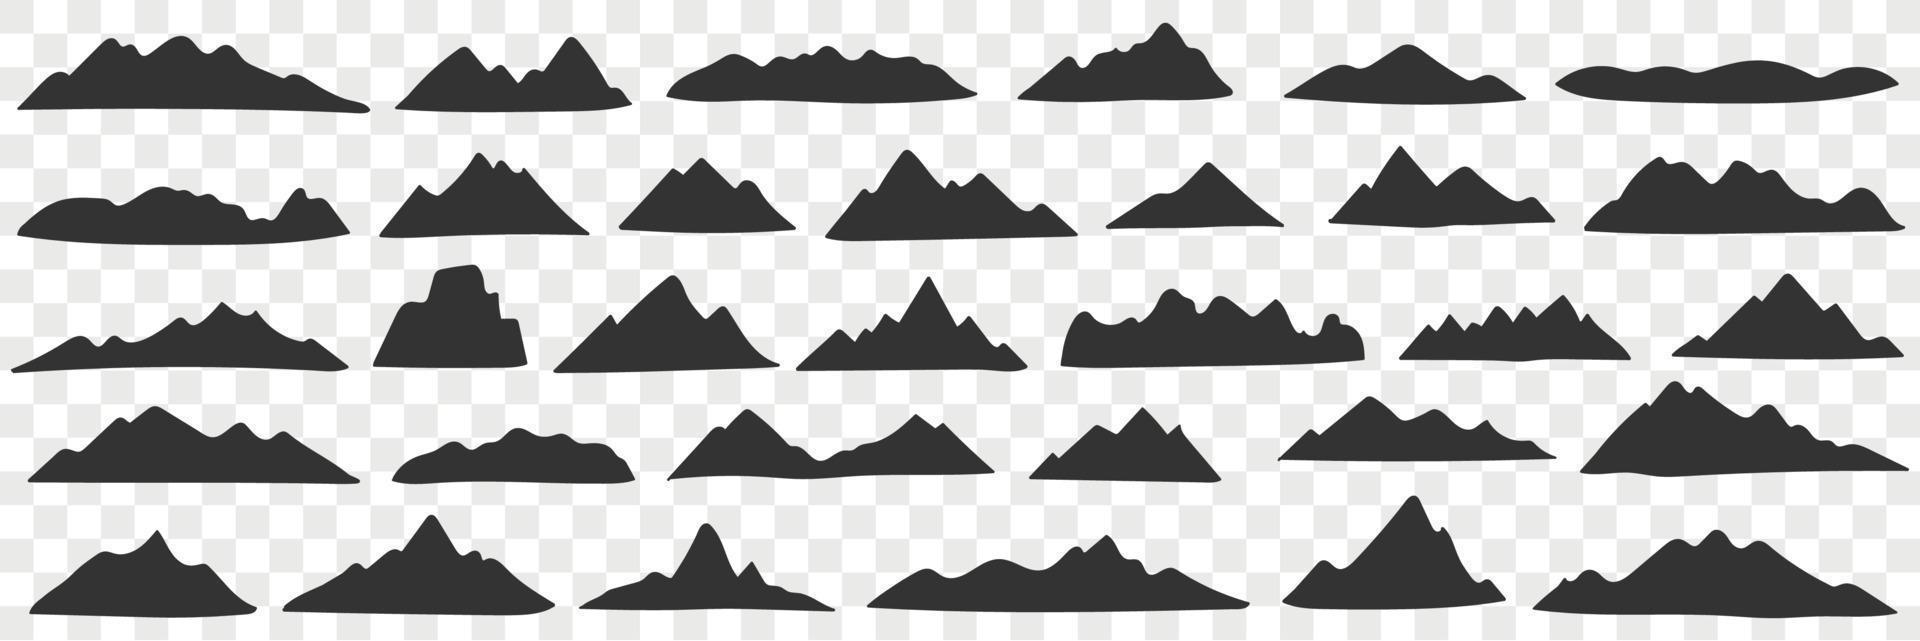 montagne gamma sagome scarabocchio impostare. collezione di mano disegnato vario nero sagome di naturale colline montagne nel righe isolato su trasparente sfondo vettore